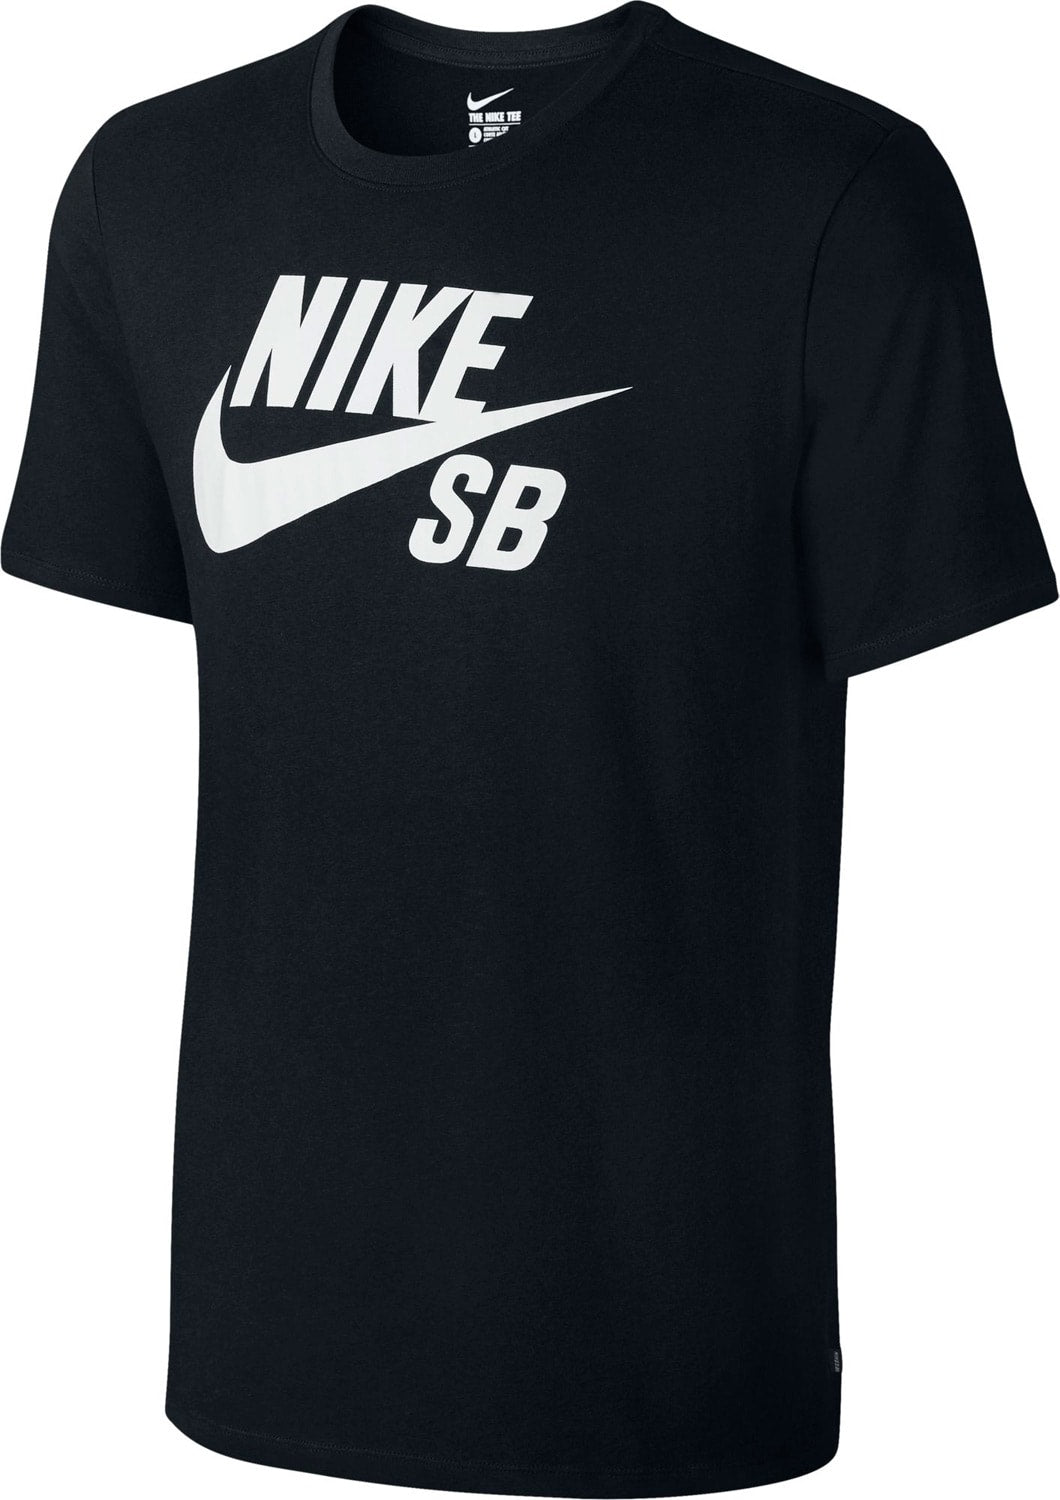 Nike SB Logo Skate Shirt (Black)